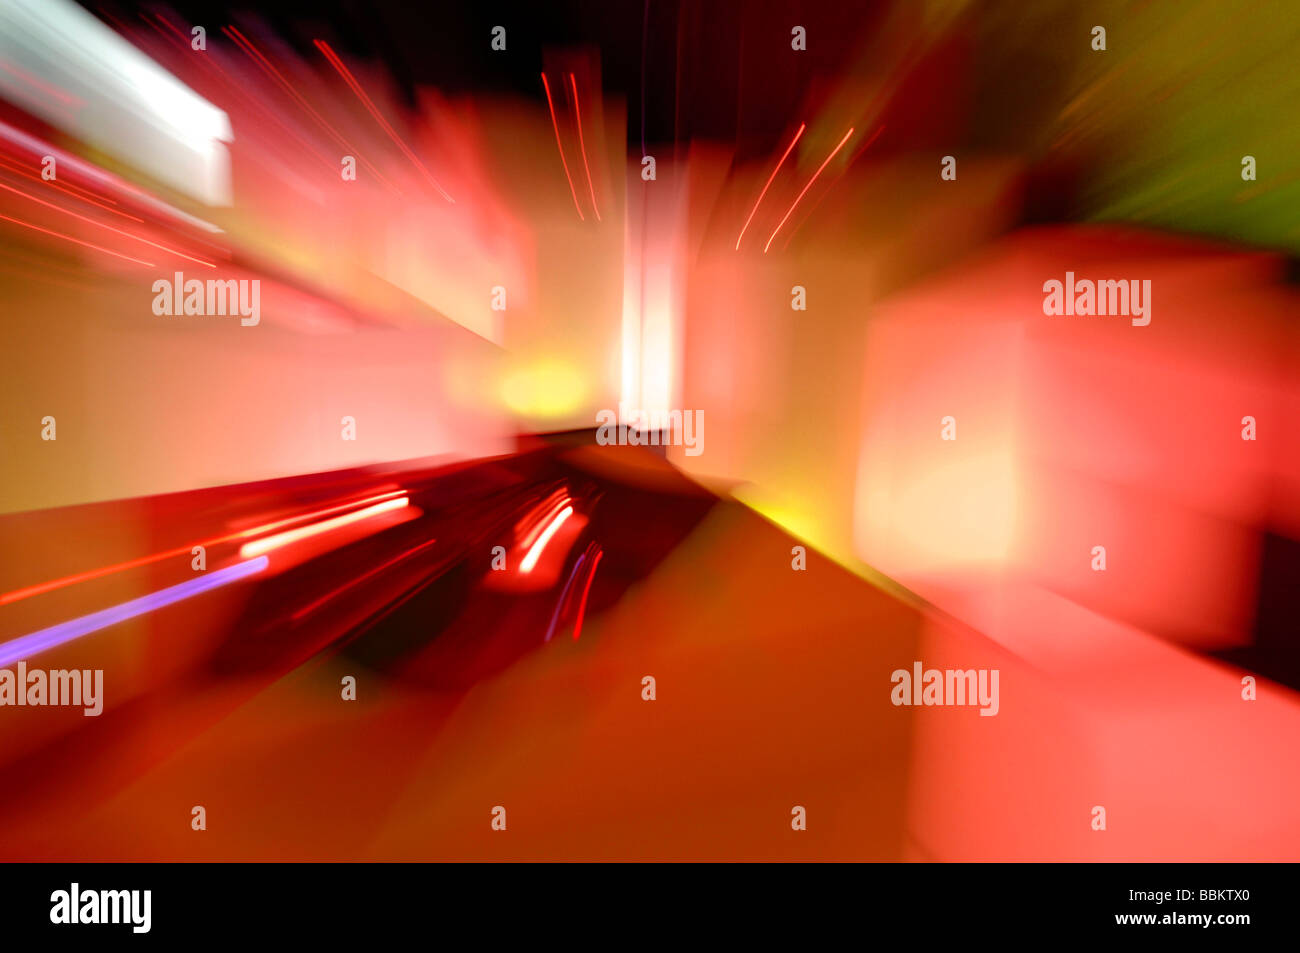 Light art, illuminated squares, zoom effect Stock Photo